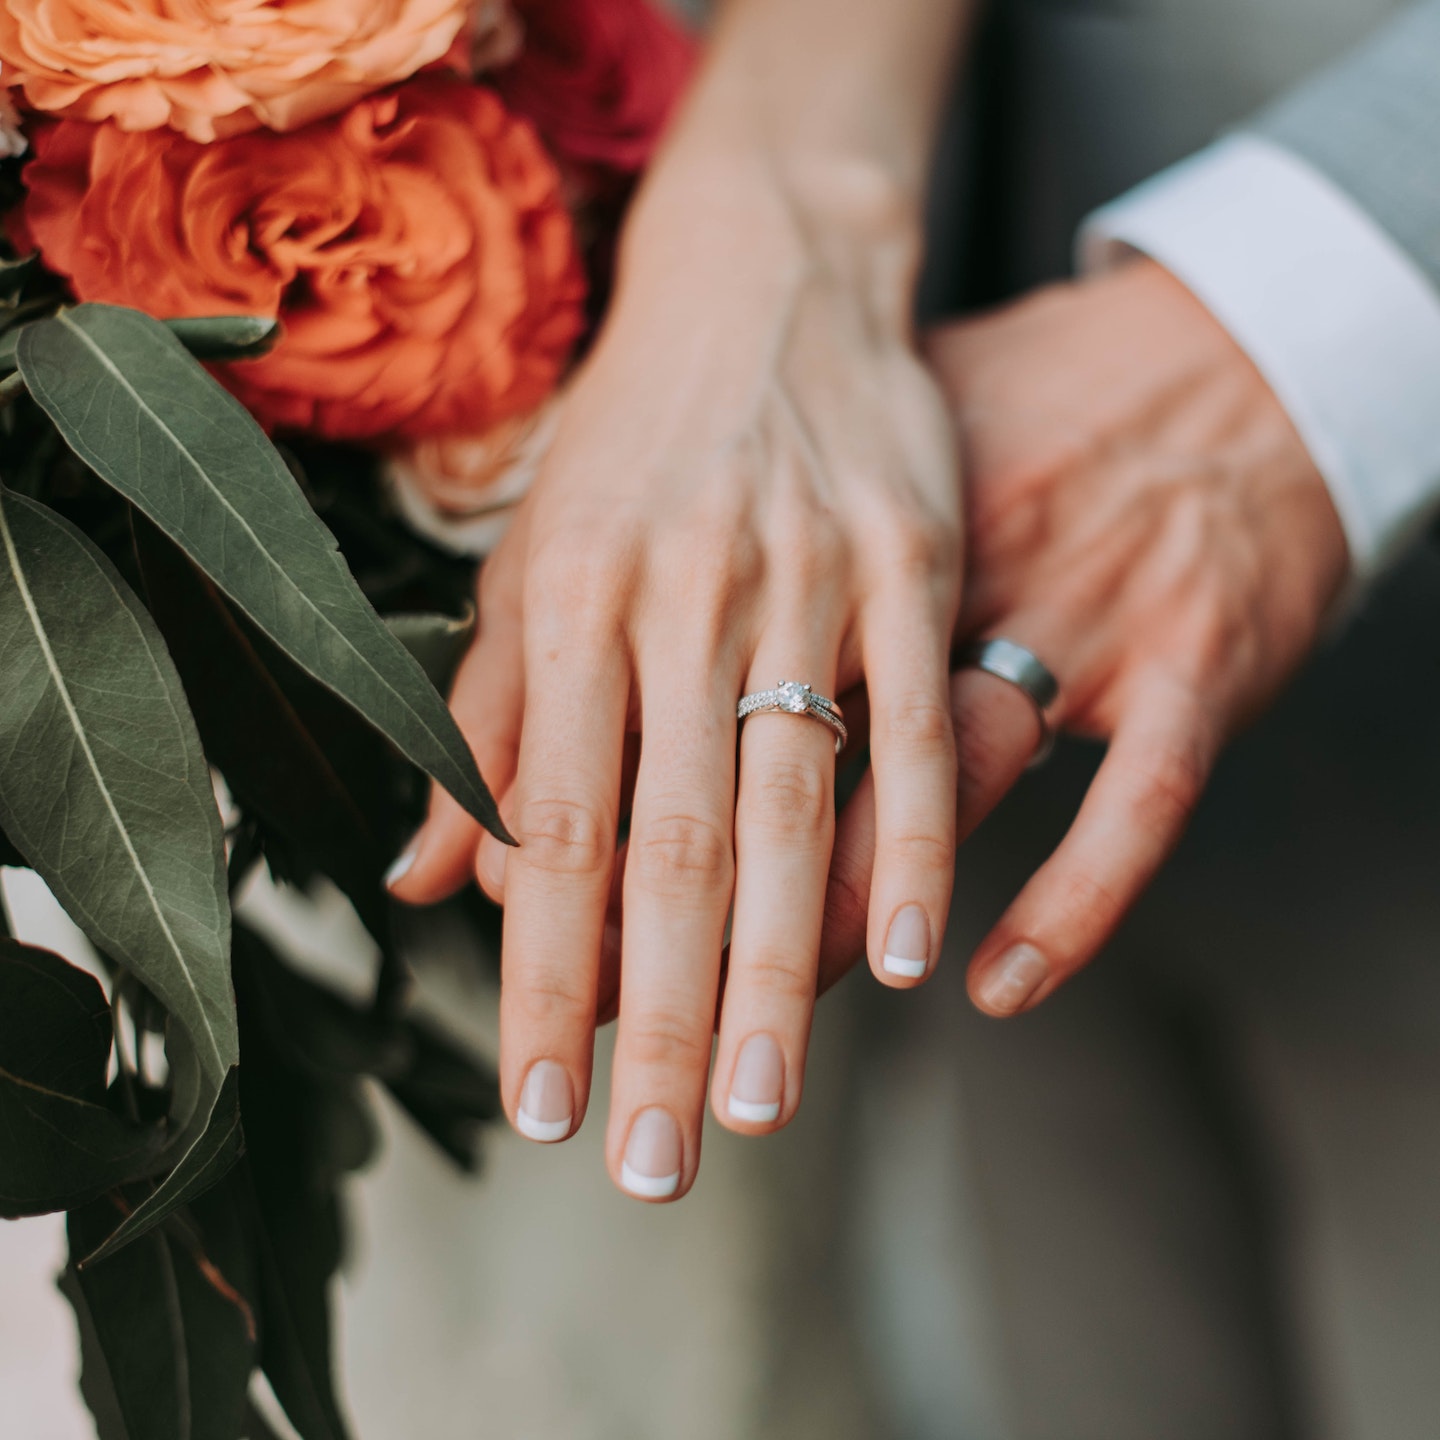 træt elektrode sendt Where To Buy Wedding Rings In Hong Kong: Top Jewellers We Love